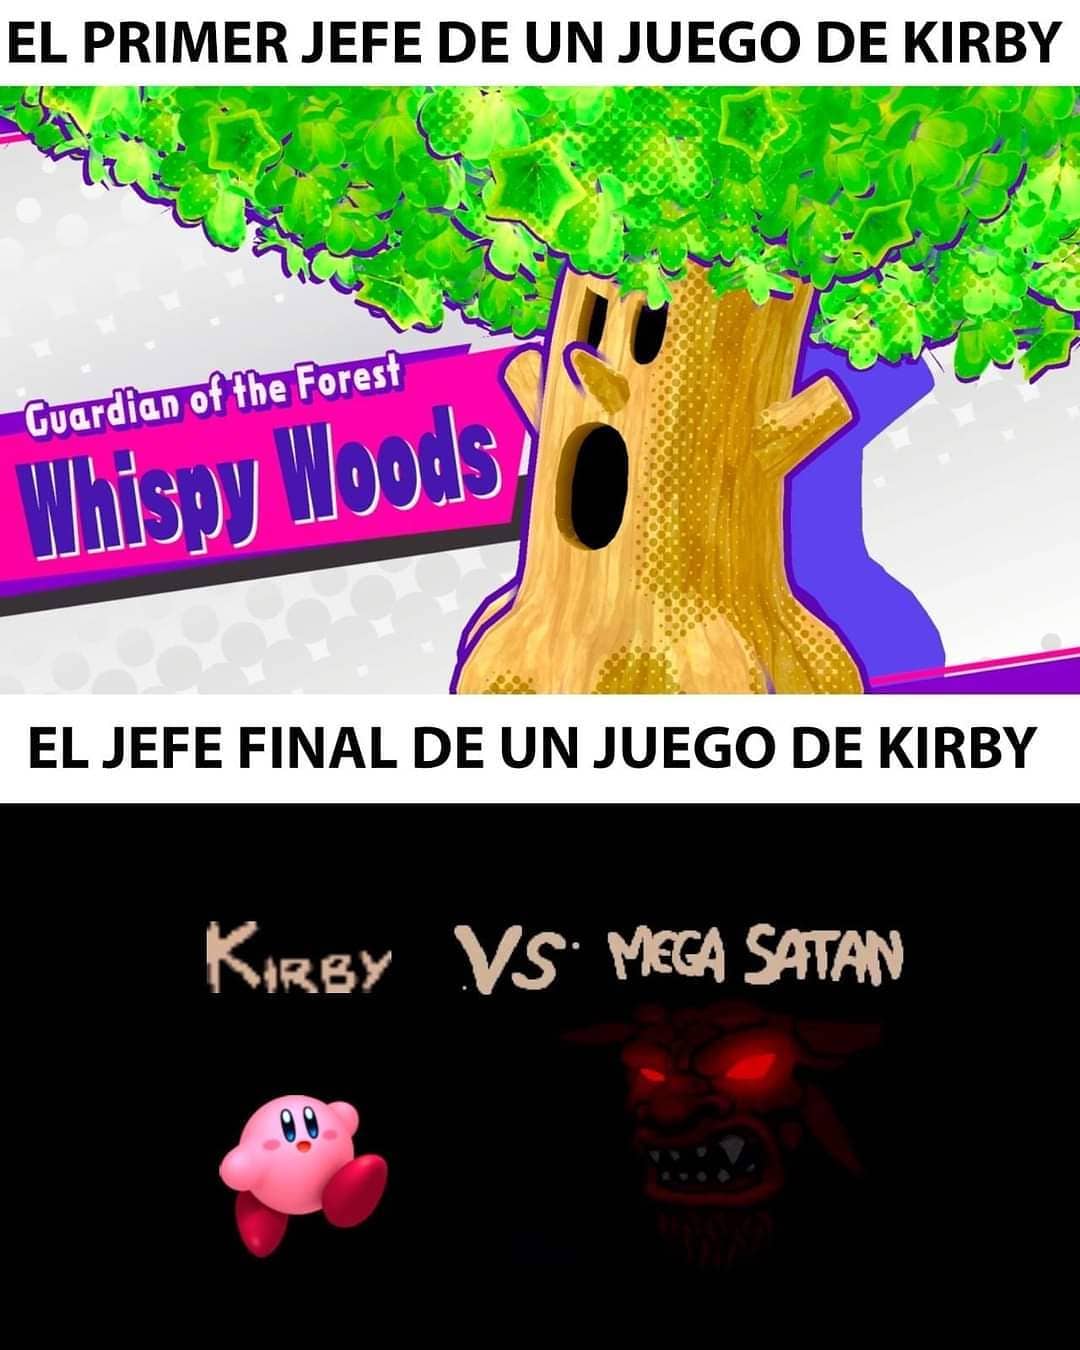 El primer jefe de un juego de Kirby. El jefe final de un juego de Kirby.